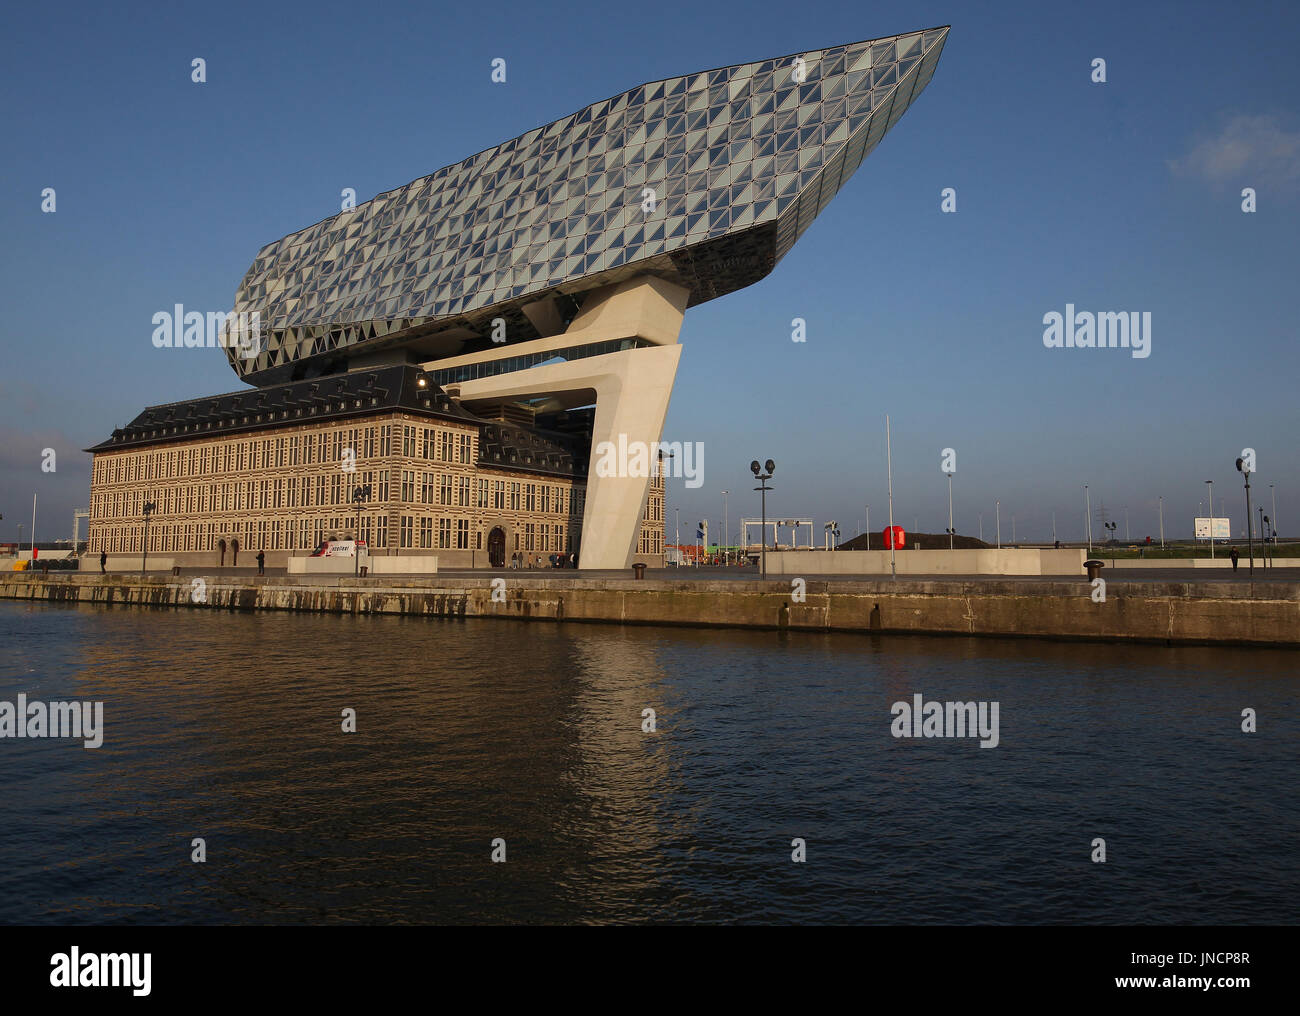 La maison du port est le siège social de l'Autorité portuaire d'Anvers. Il est situé à Anvers, Flandre, Belgique. Banque D'Images